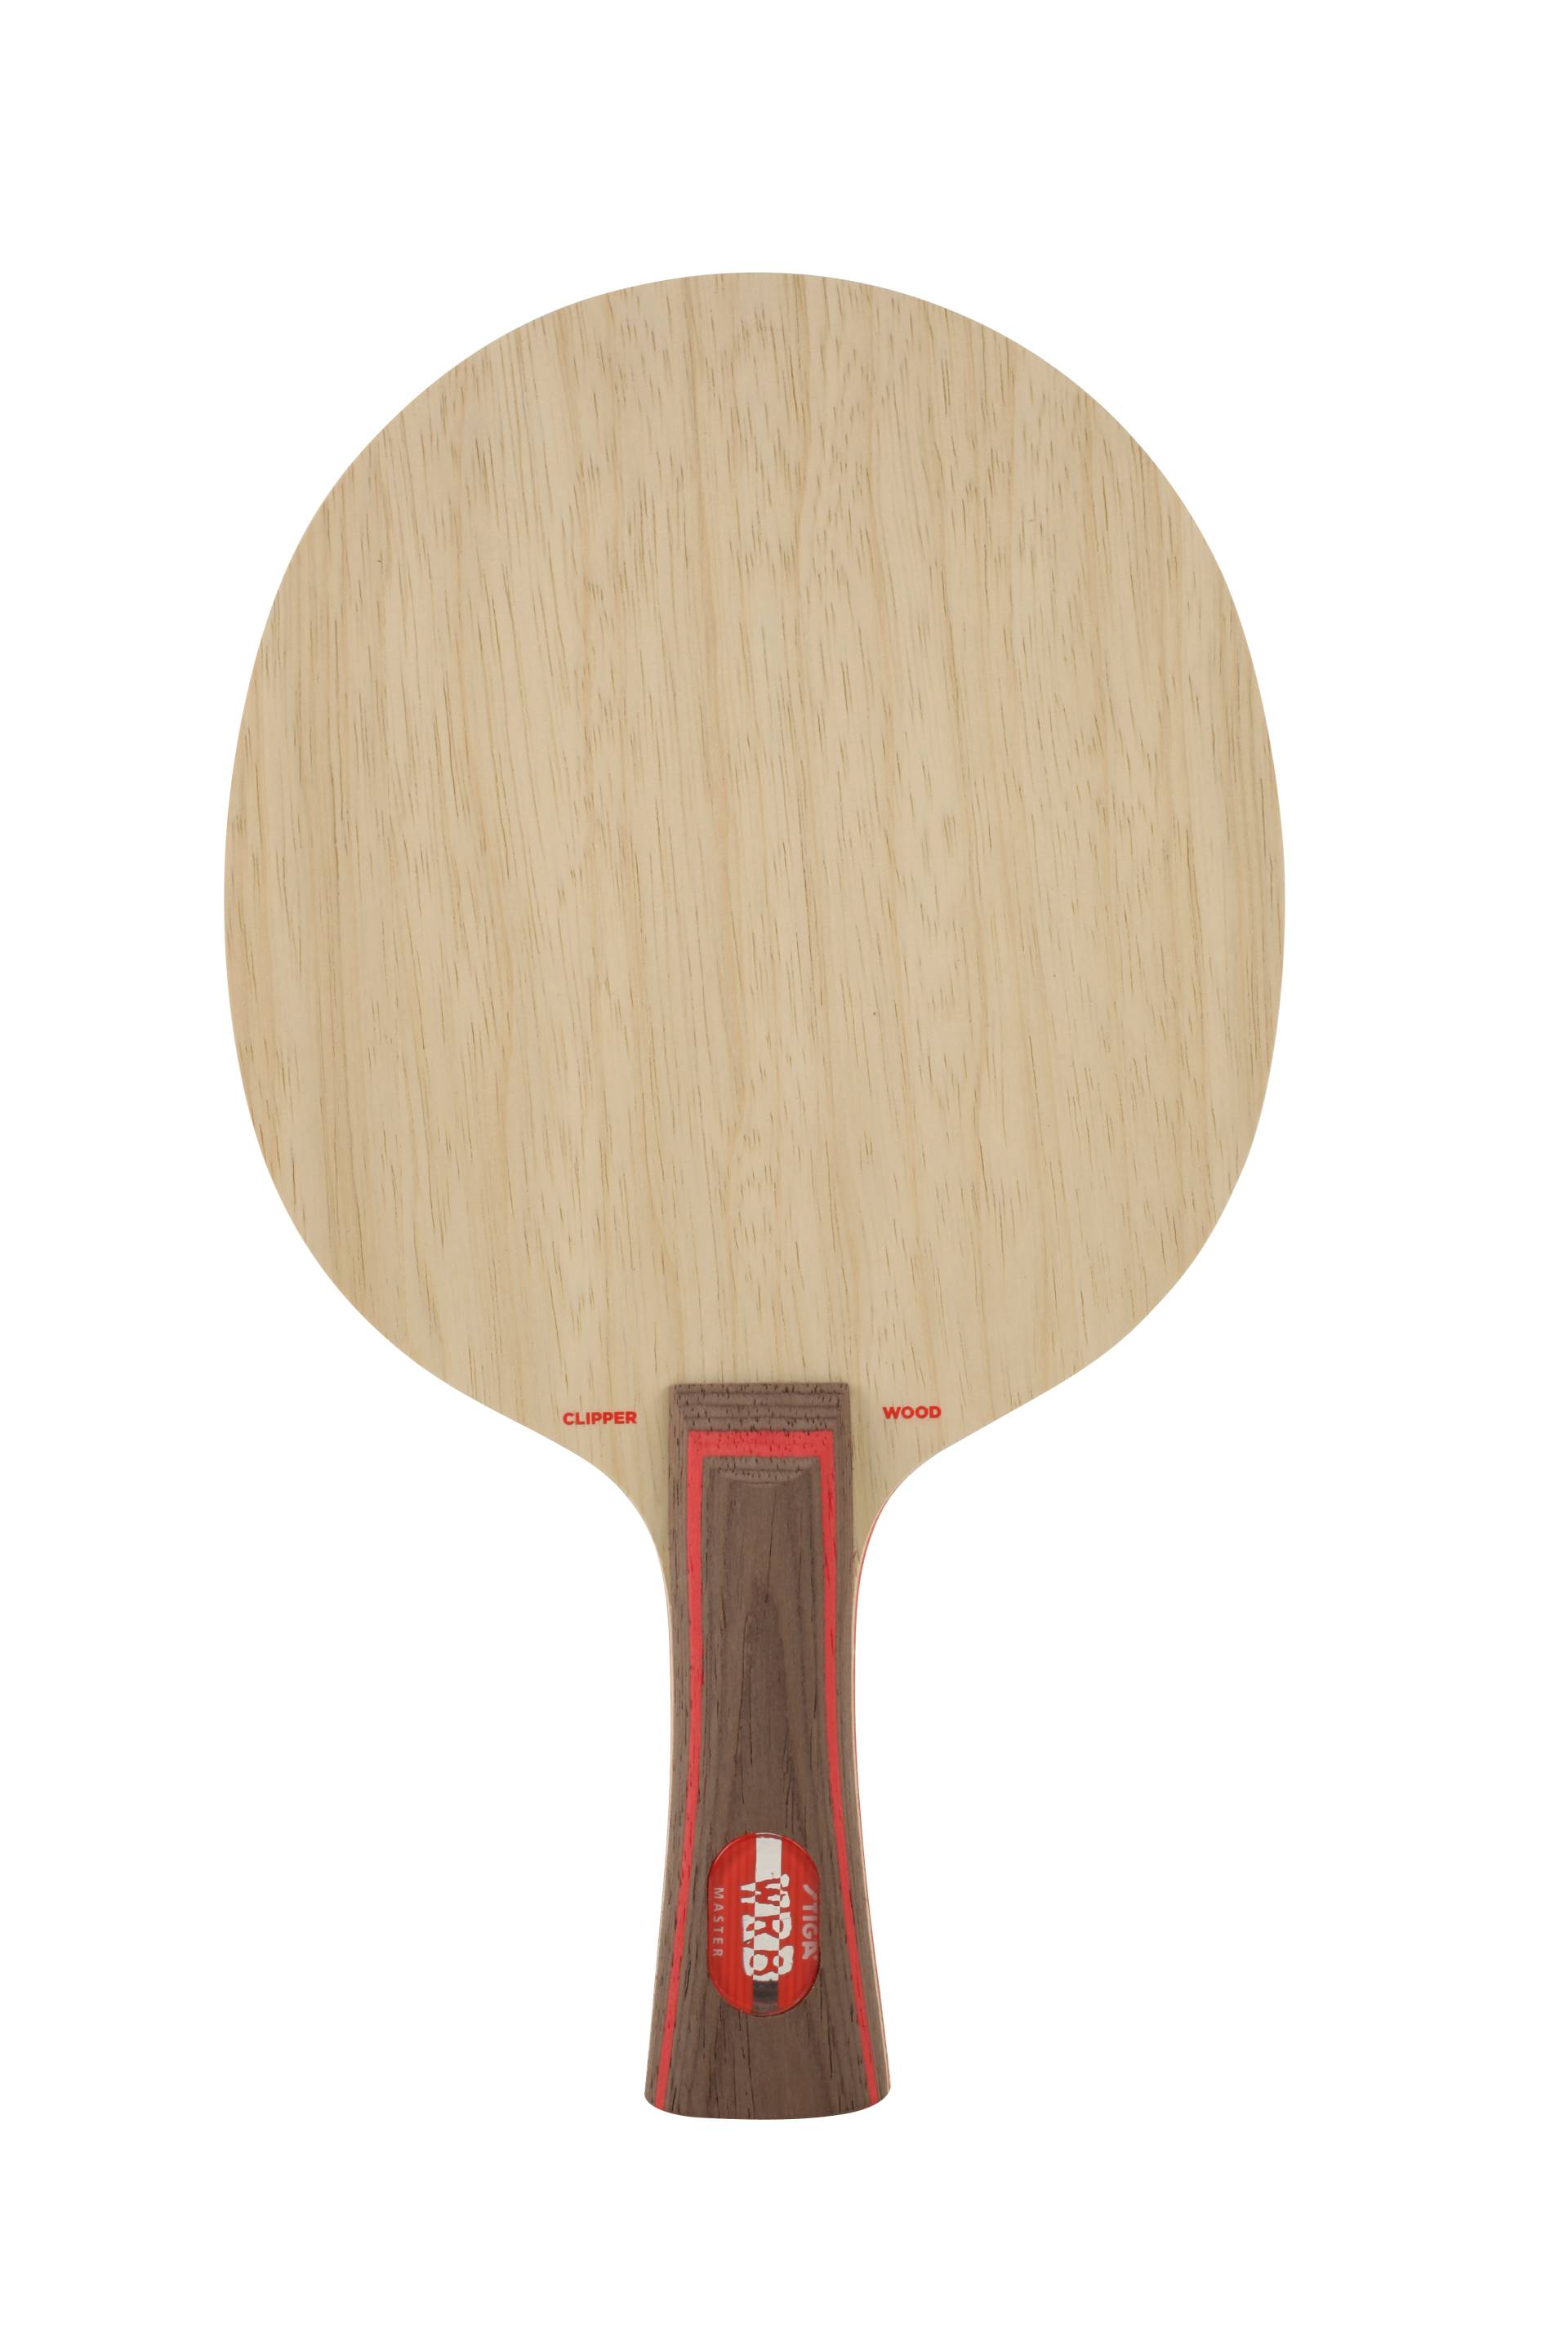 Stiga Clipper Wood WRB - Tischtennis Holz von Stiga